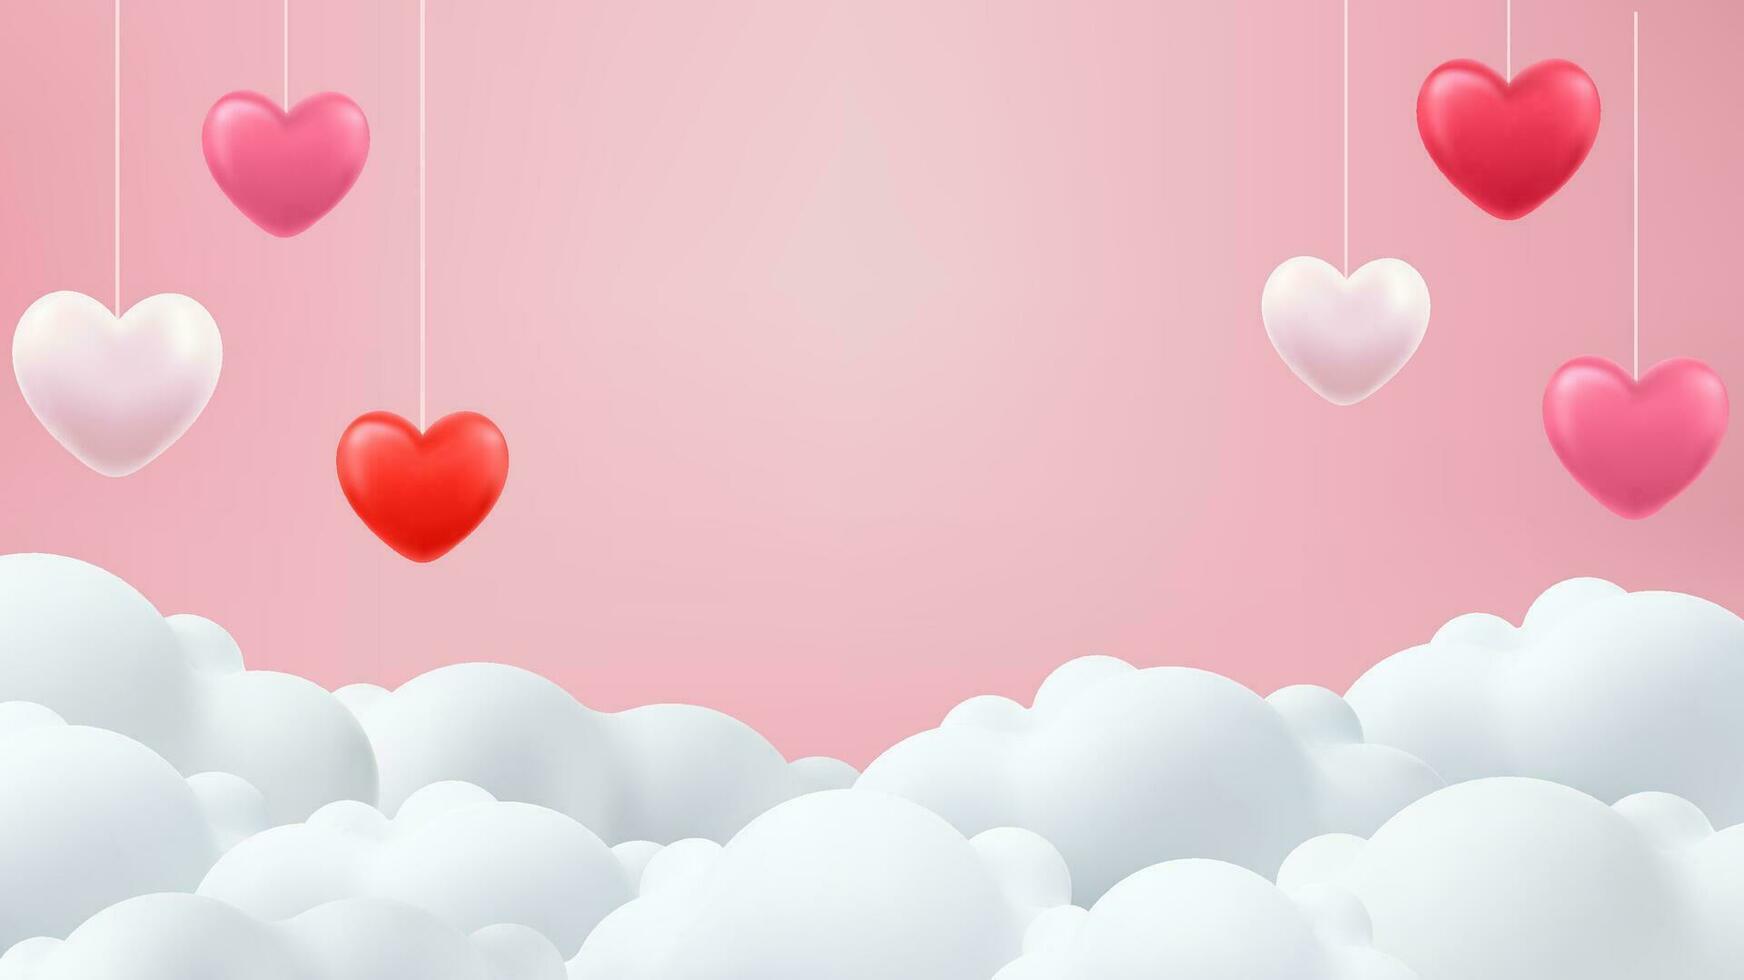 contento San Valentino giorno manifesto o voucher; tagliando. rosa bandiera festa invito modello. 3d cuore su nube sfondo. amore concetto per contento madre S giorno, San Valentino S giorno, compleanno giorno. vettore illustrazione